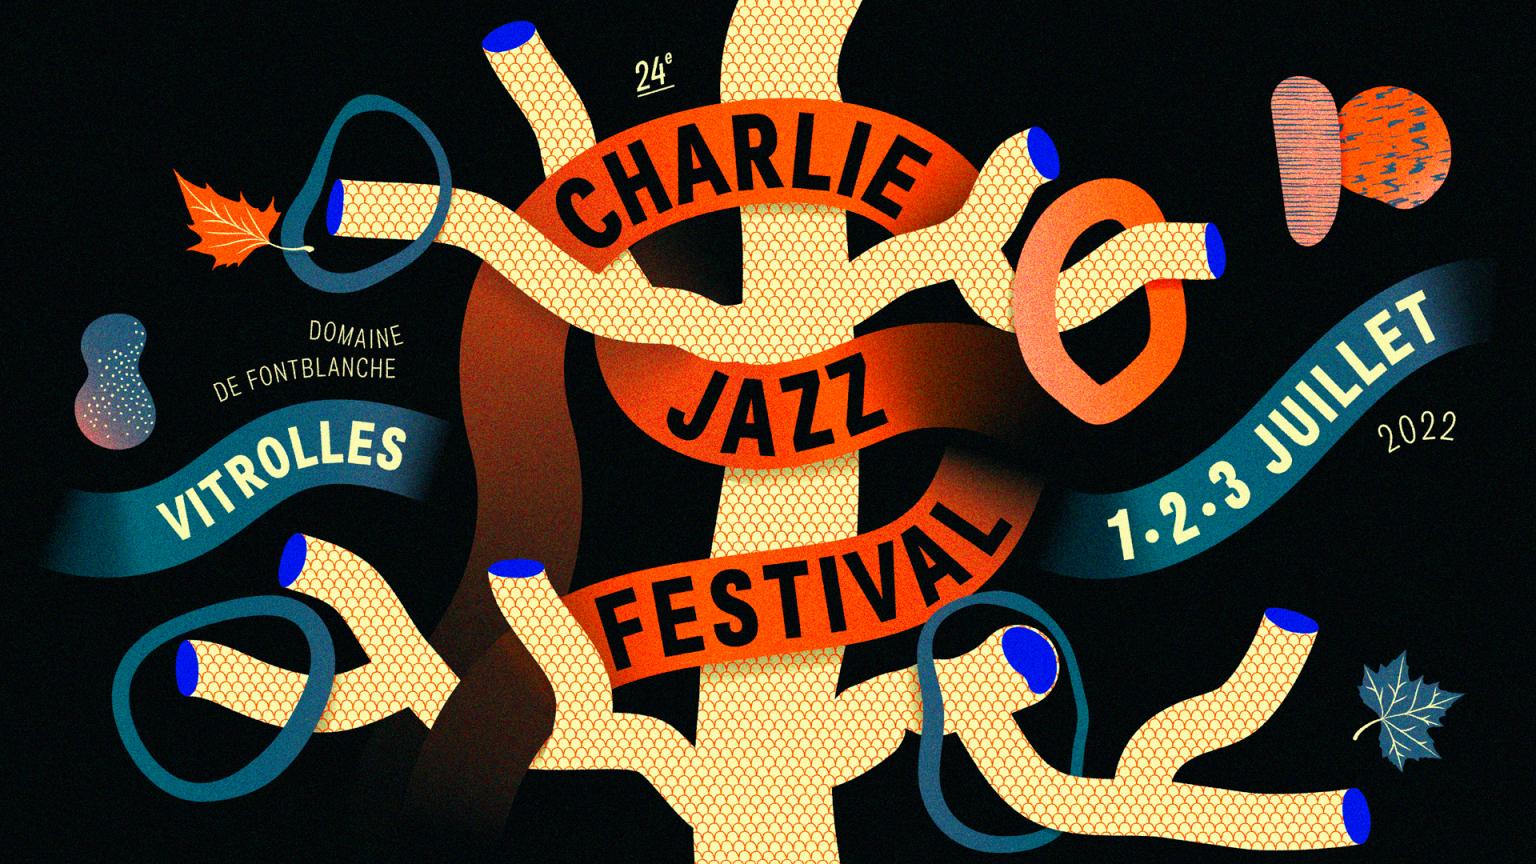 Vitrolles : Charlie Jazz Festival